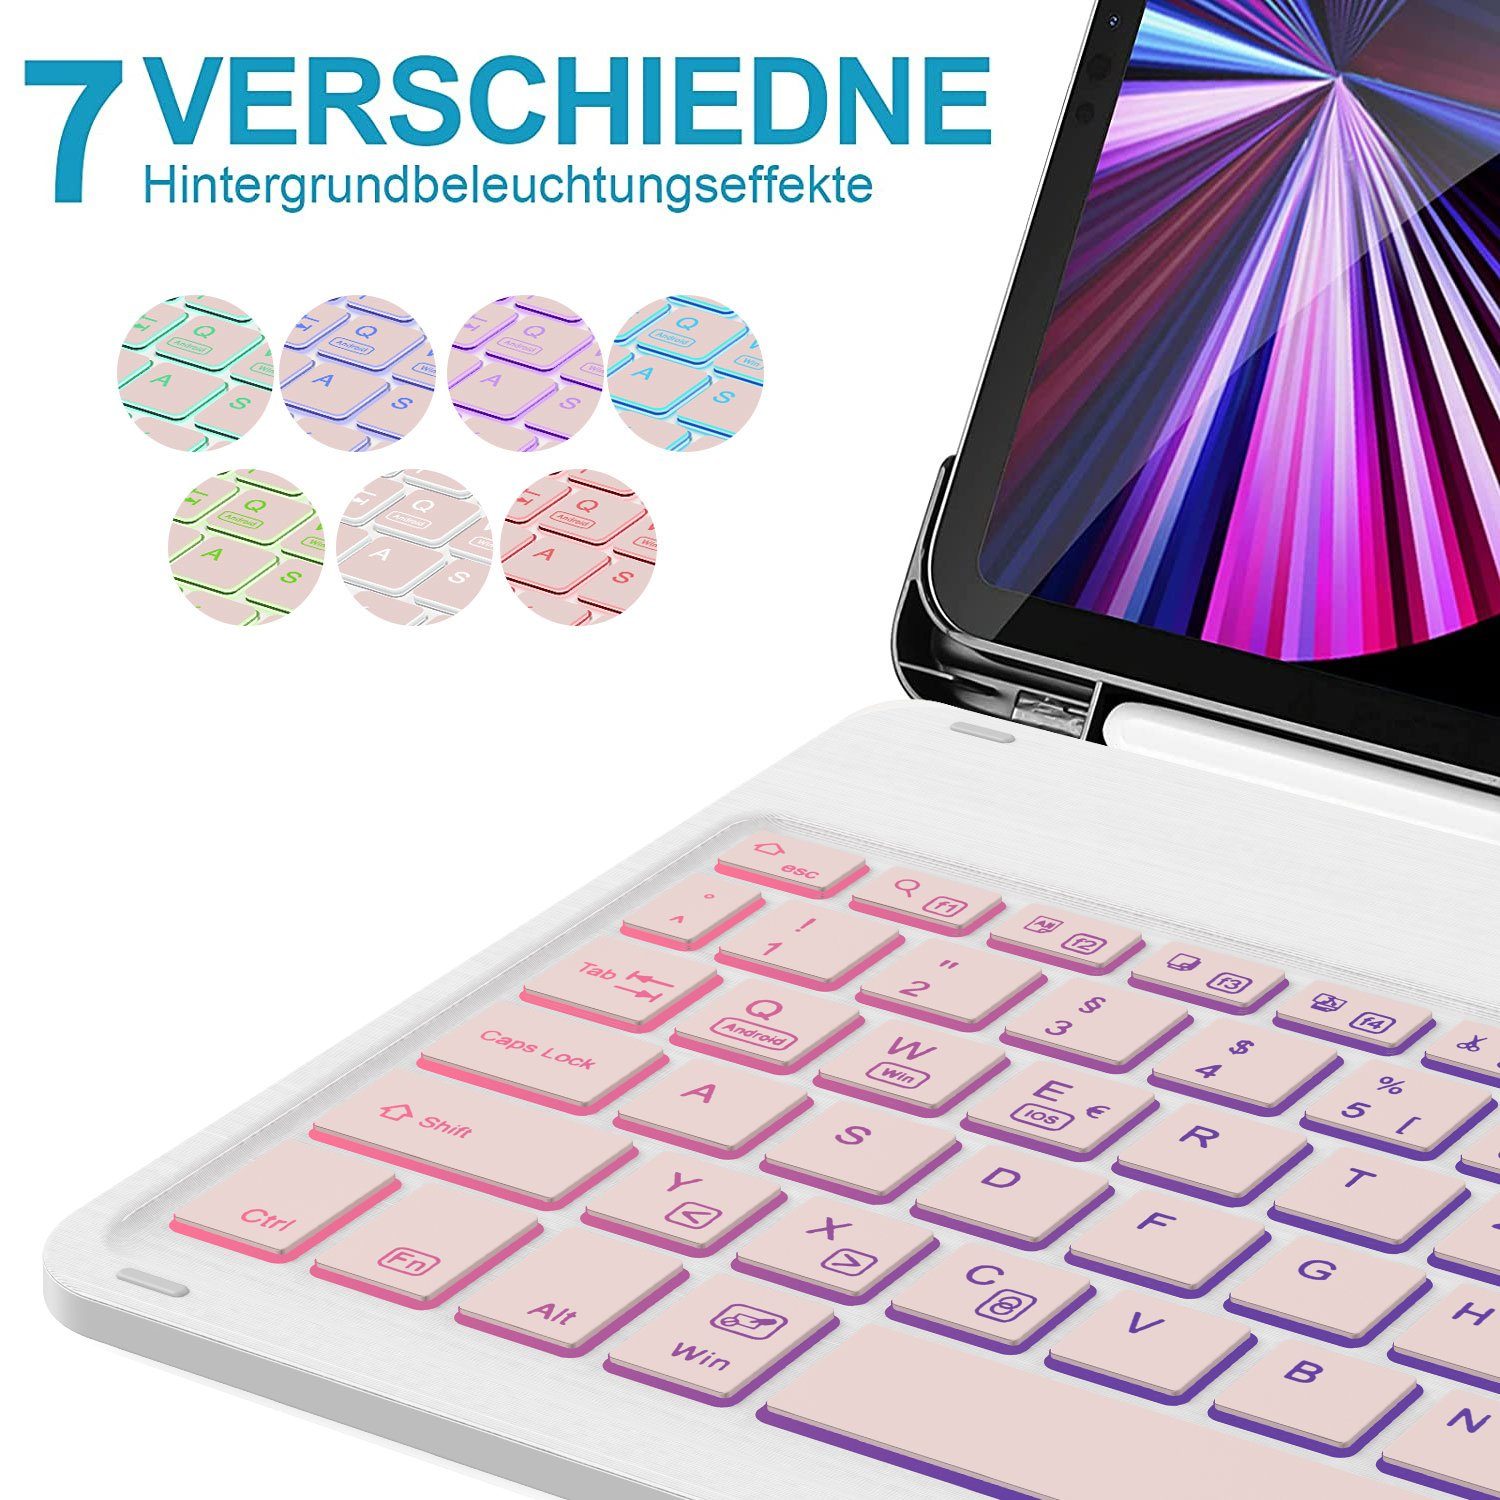 4 11 Pro Tastatur Deutsches Beleuchtete Kabellose 2022/2021/2020 iPad QWERTZ-Layout) (Roségold, & iPad 5/Air Tastatur, für Mutoy Hülle Air iPad-Tastatur